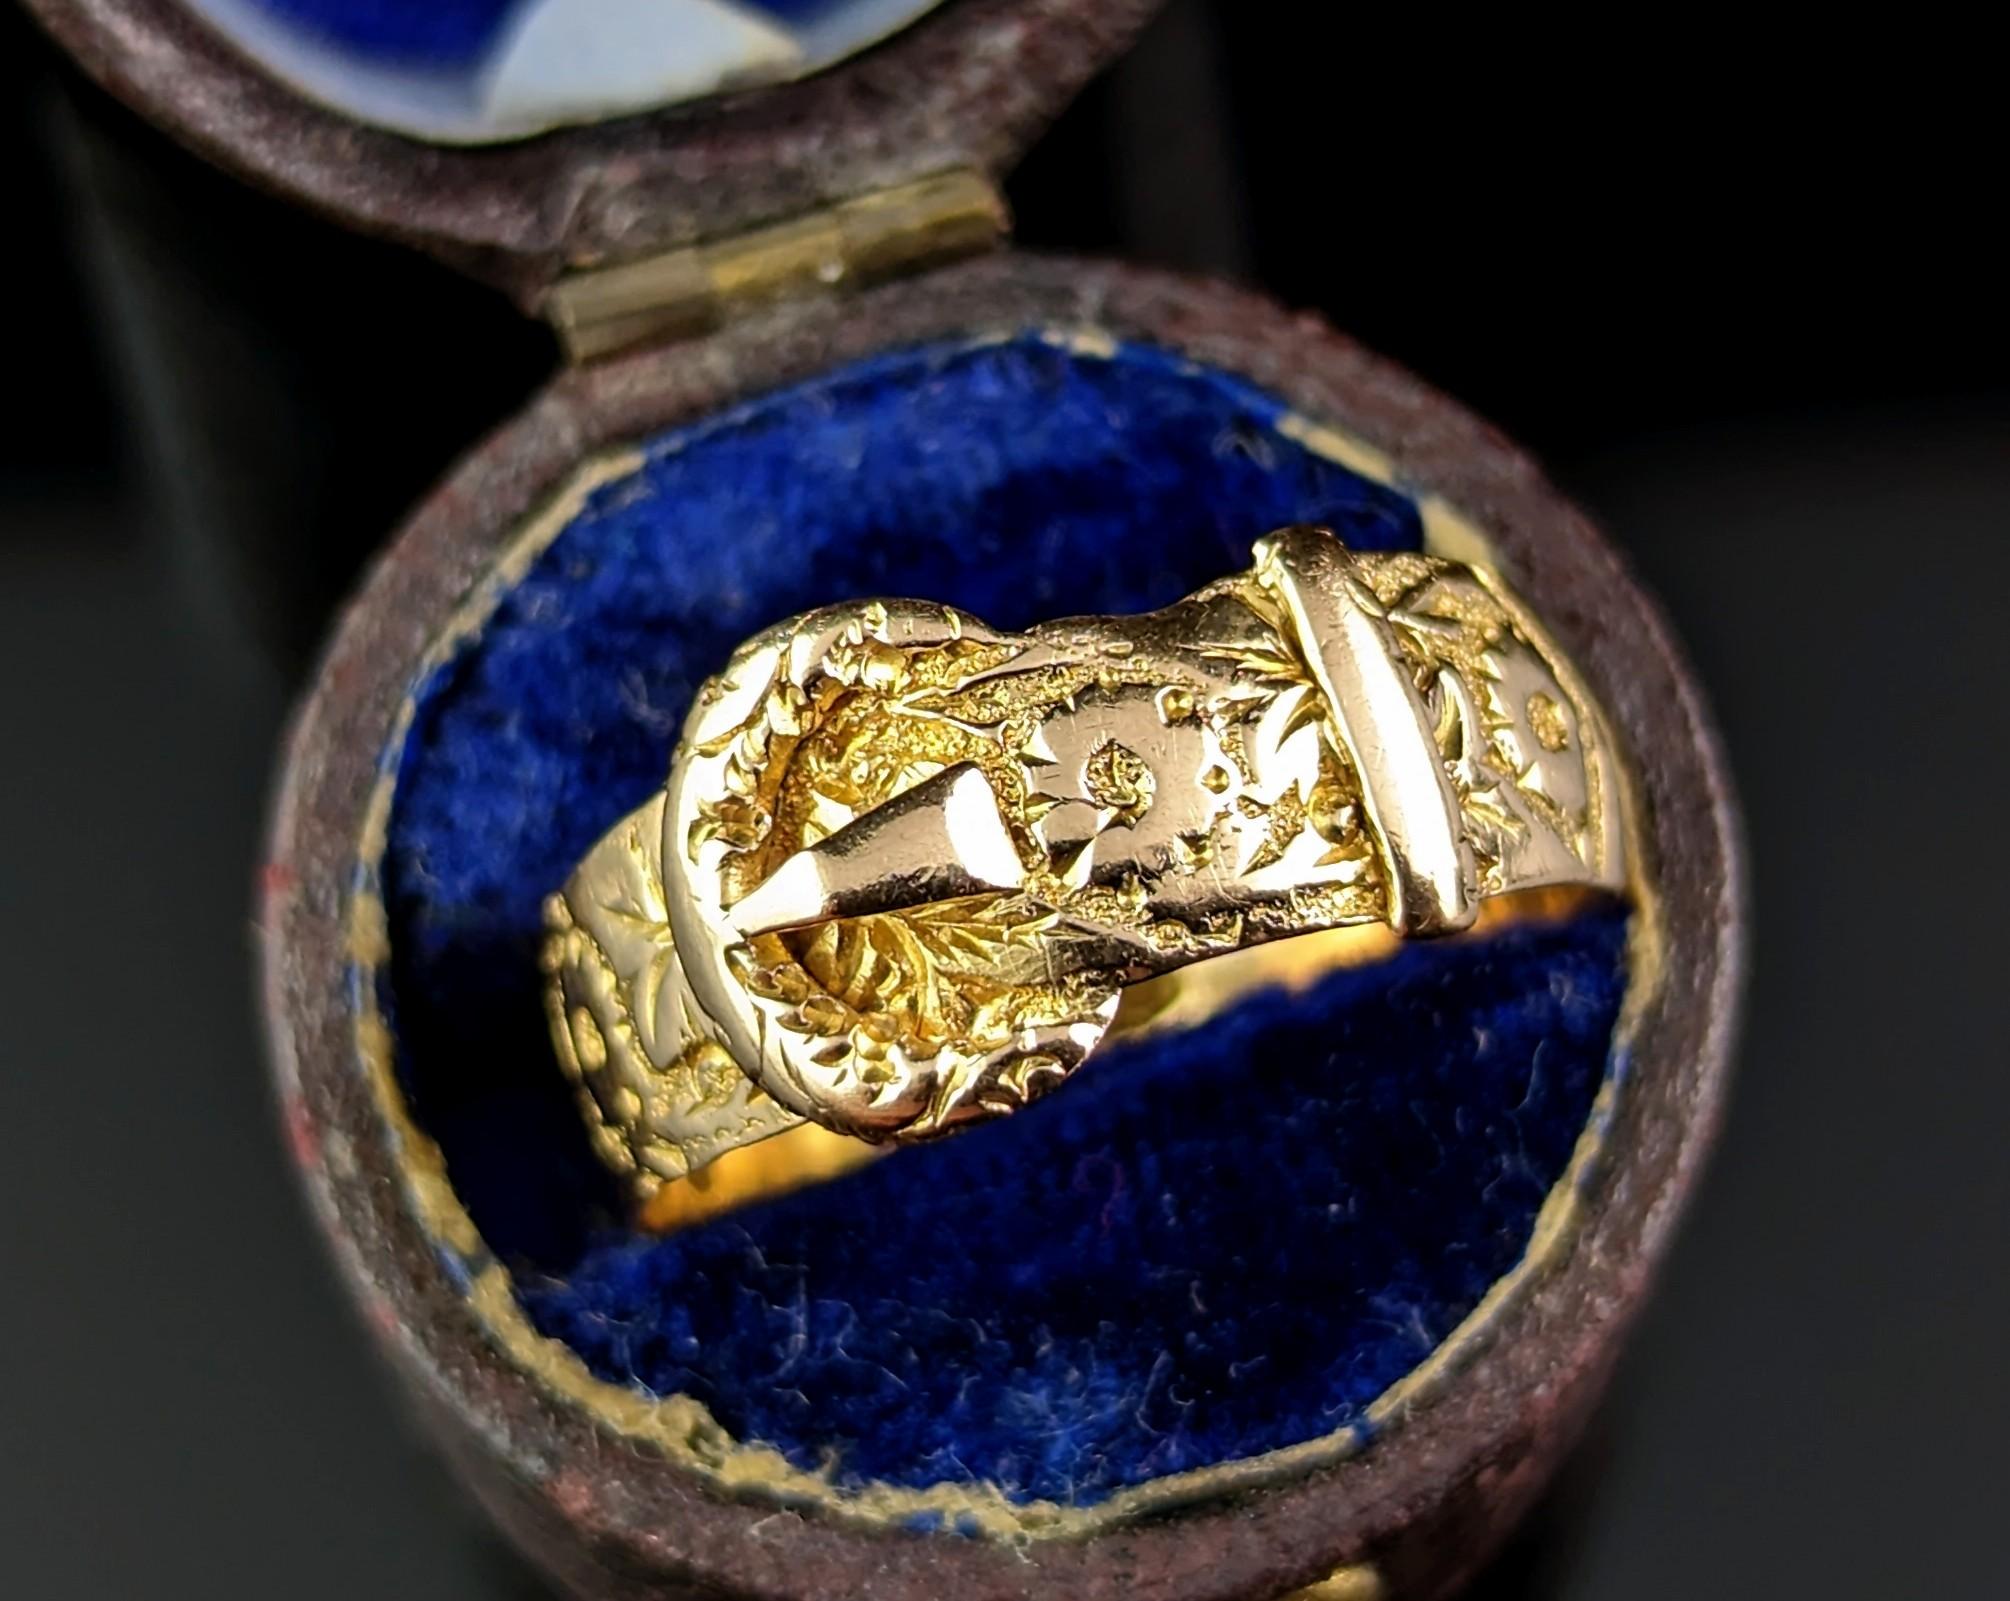 Diese atemberaubende antike 18kt Gold graviert Buckle Ring ist so reich und bezaubernd.

Das butterweiche Goldband ist stark ziseliert und mit einem Orangenblütenmotiv graviert und hat eine Schnalle auf der Vorderseite. Die Schnalle symbolisiert